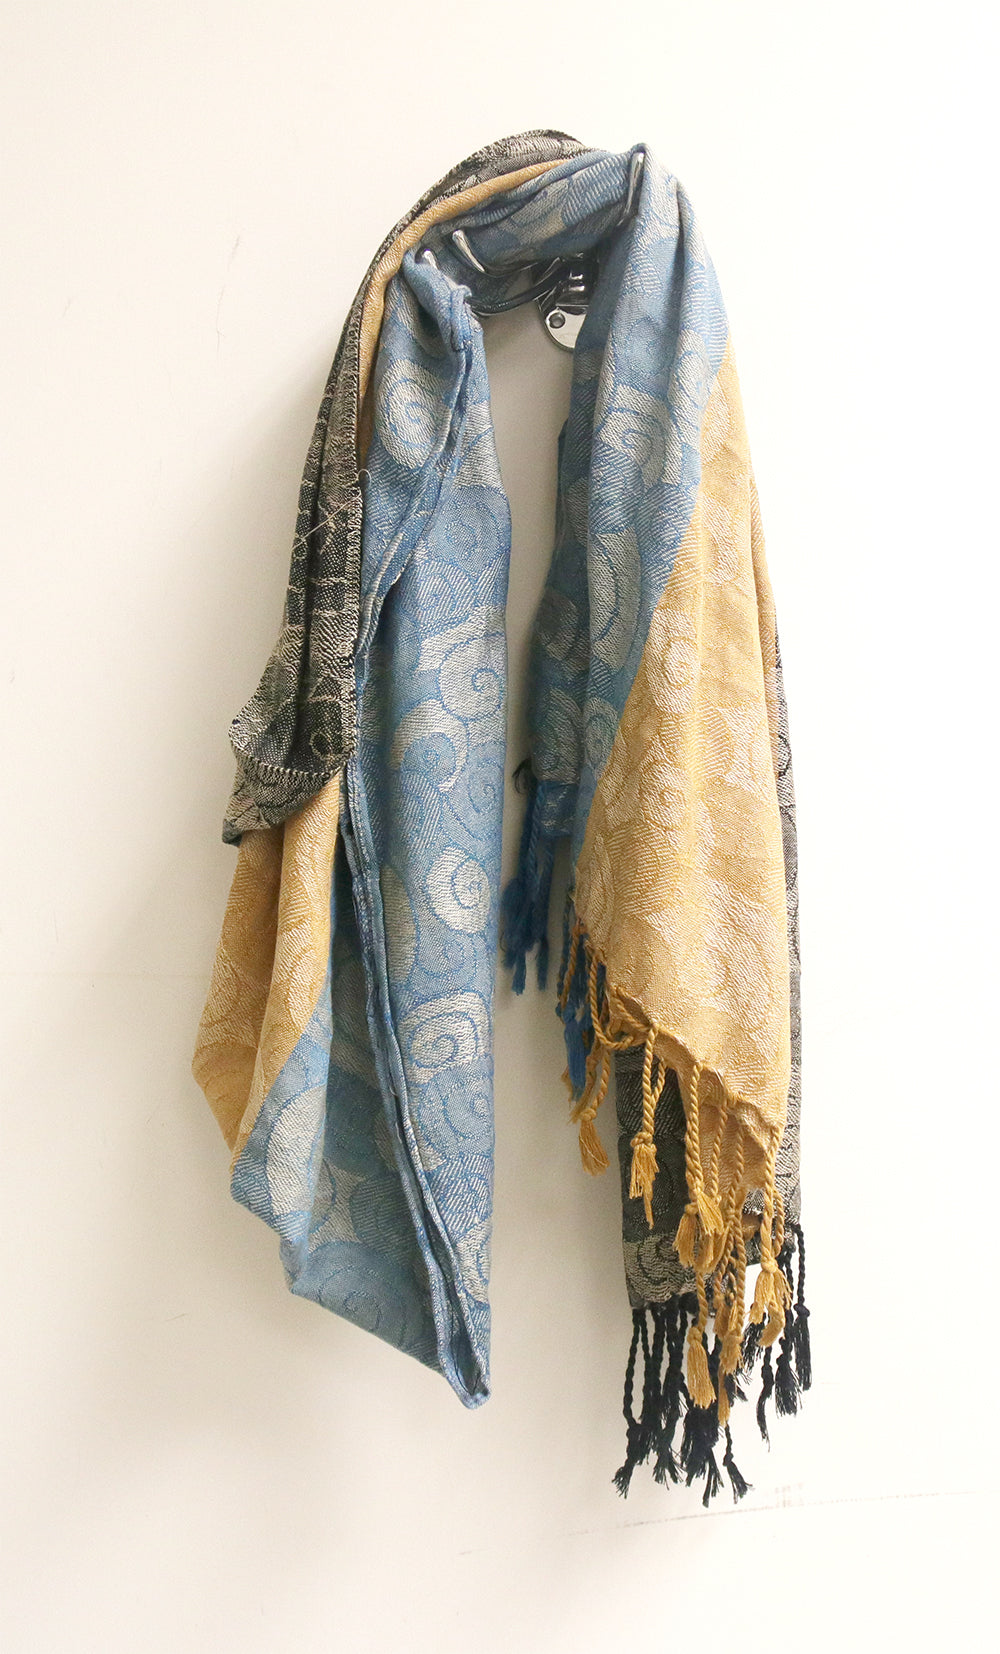 「編織顏色 」少數族裔婦女手作品 - Pashmina頸巾頭巾